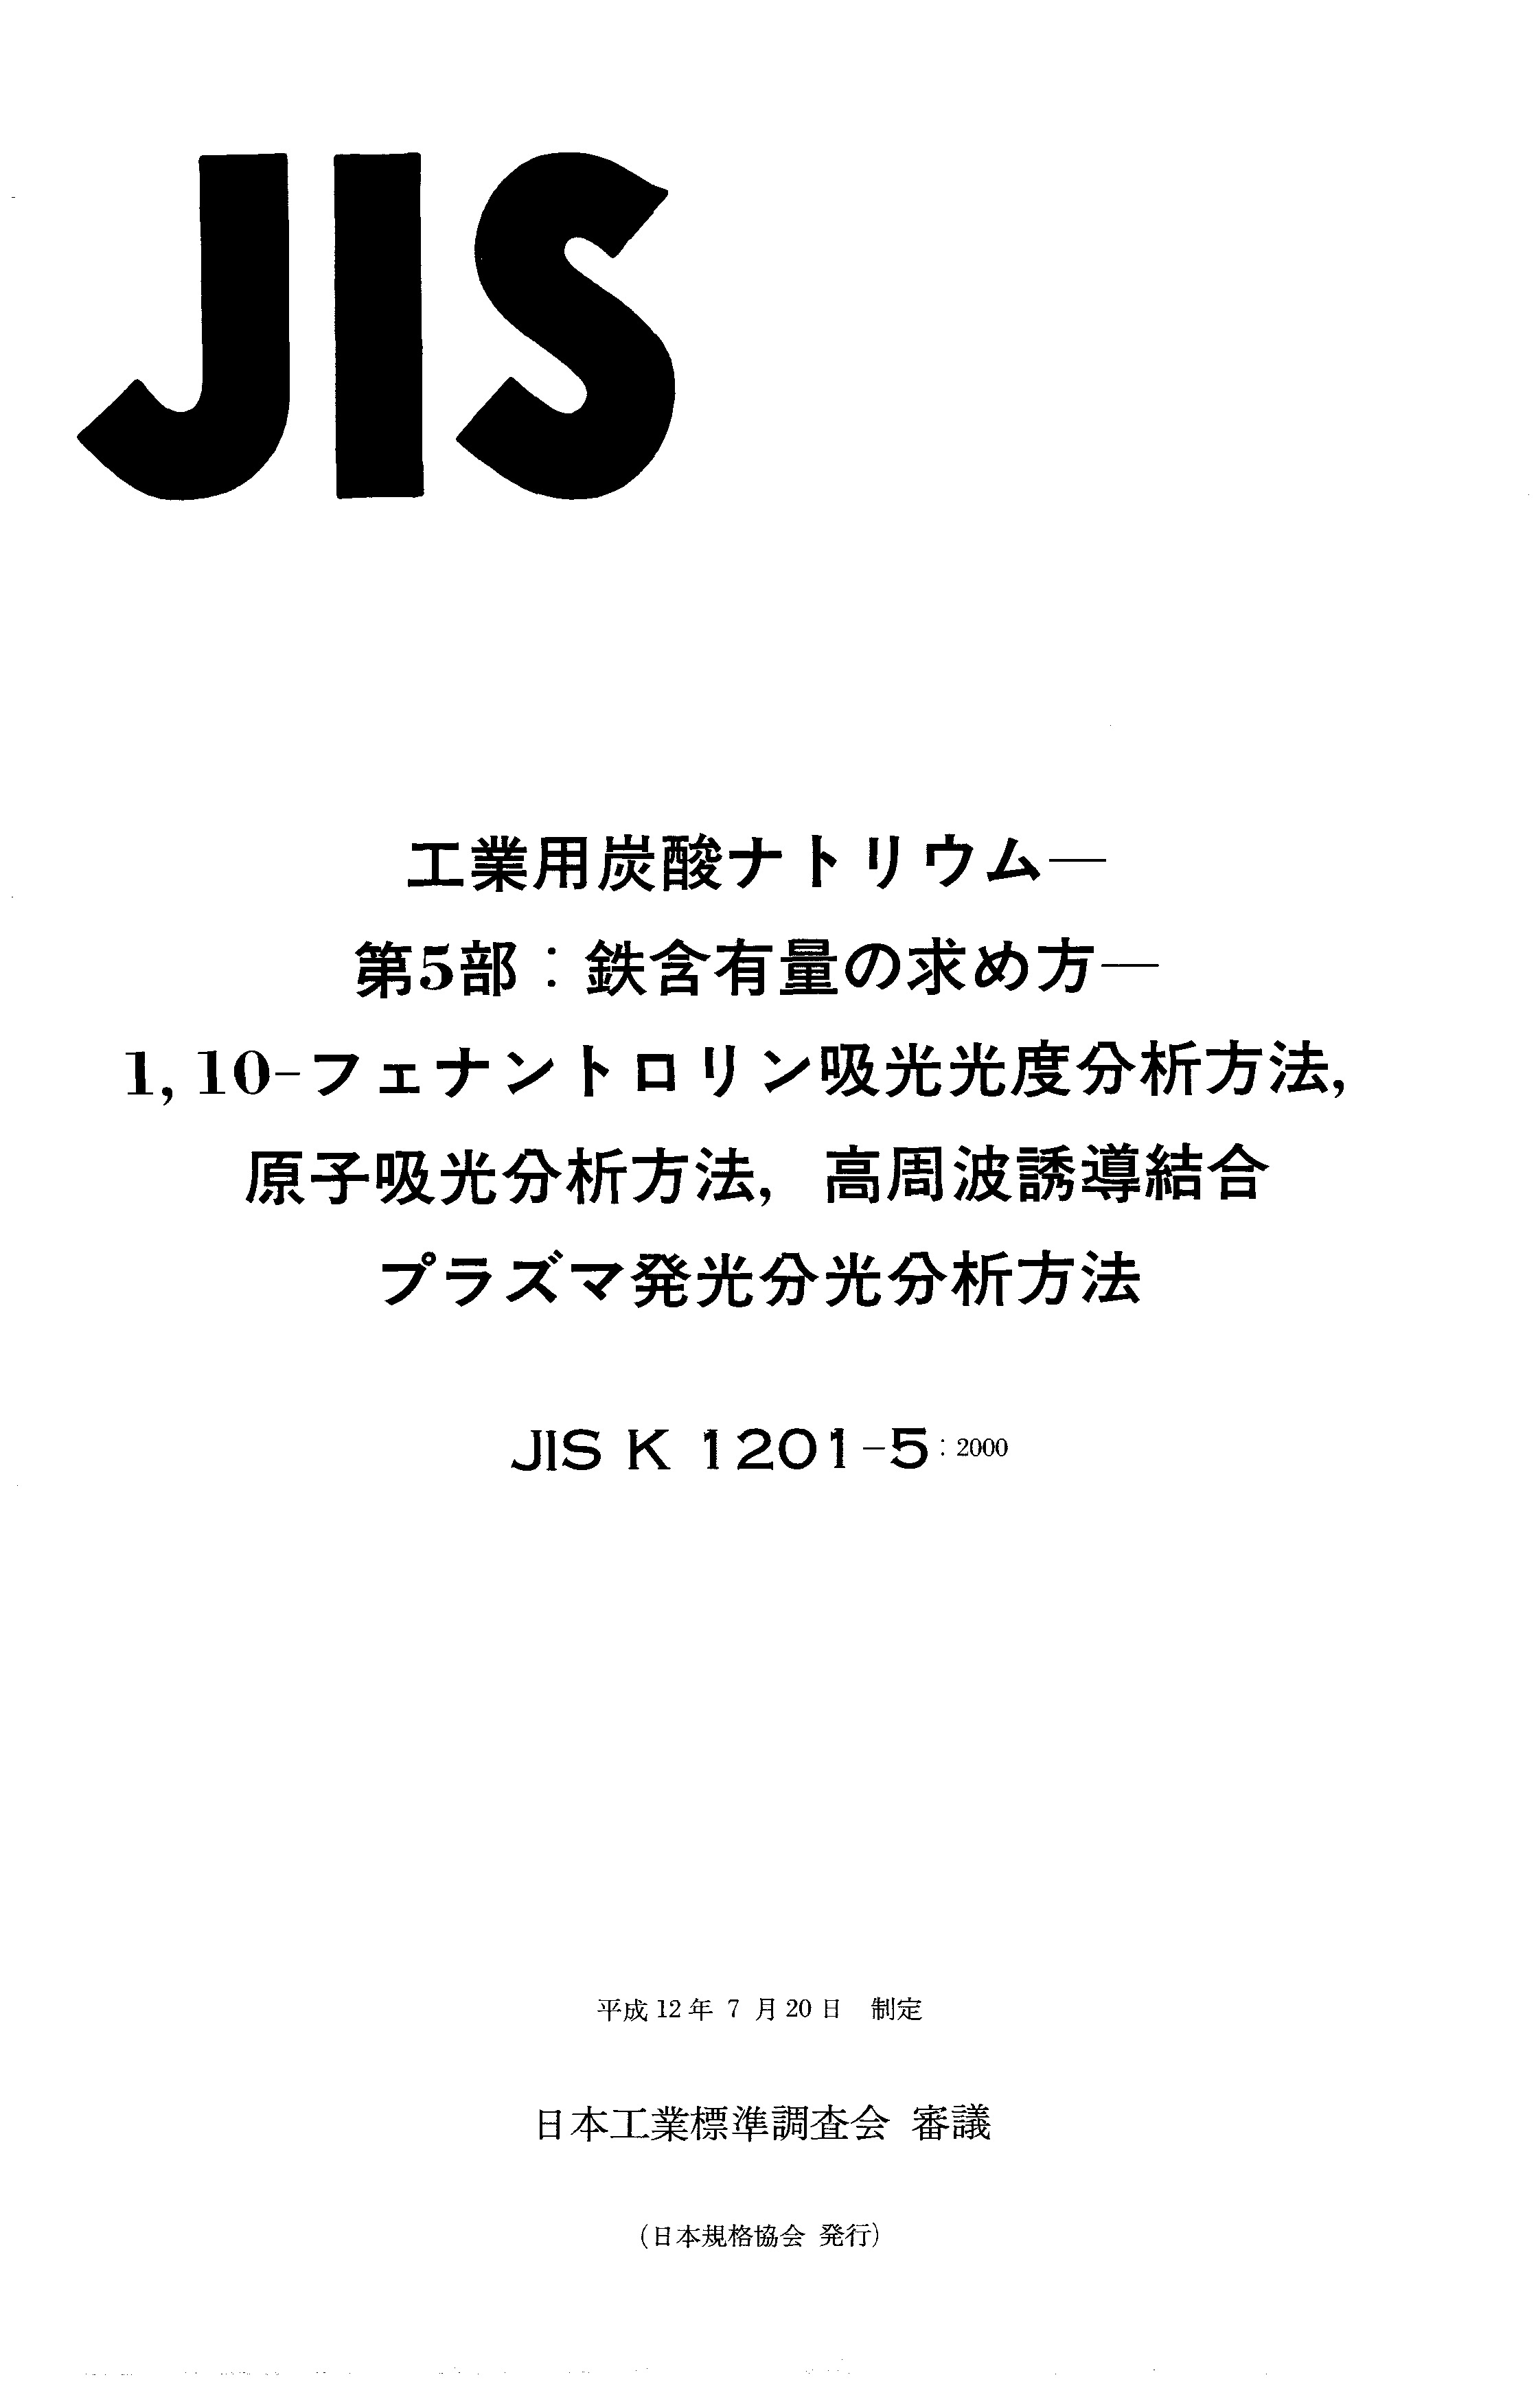 JIS K 1201-5:2000